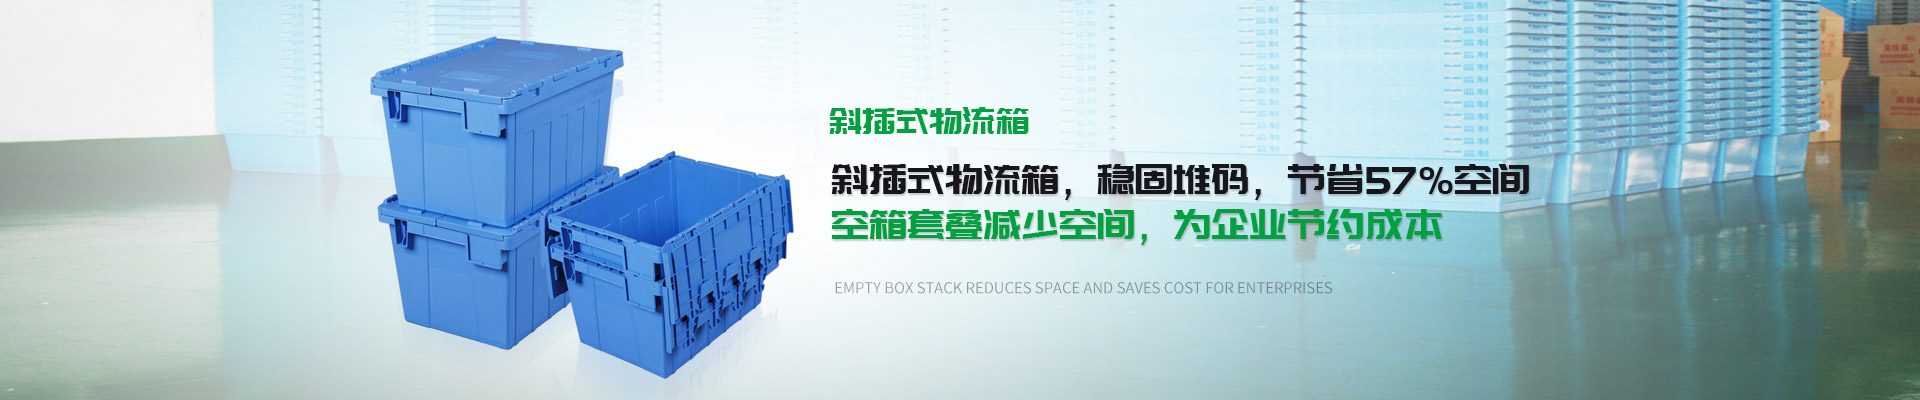 万虹塑胶-斜插式物流箱，稳固堆码，节省57%空间